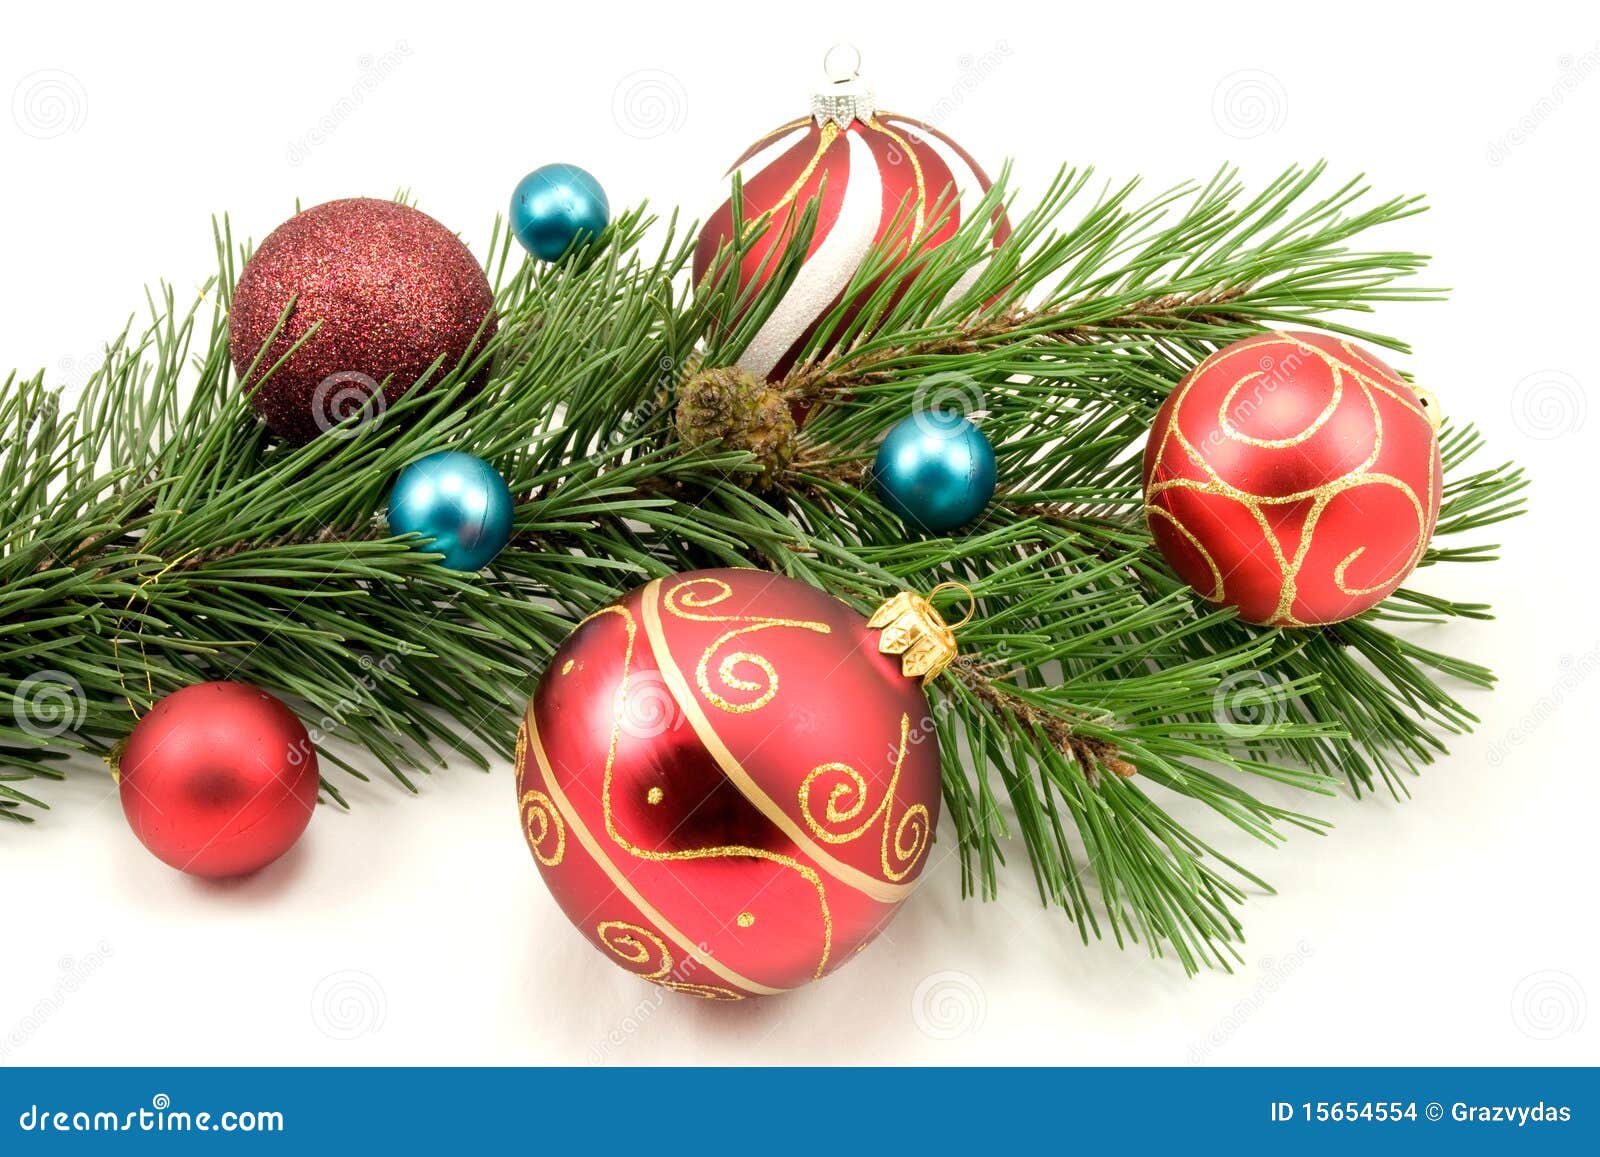 Colorful Christmas Decoration Stock Photo - Image of celebration ...